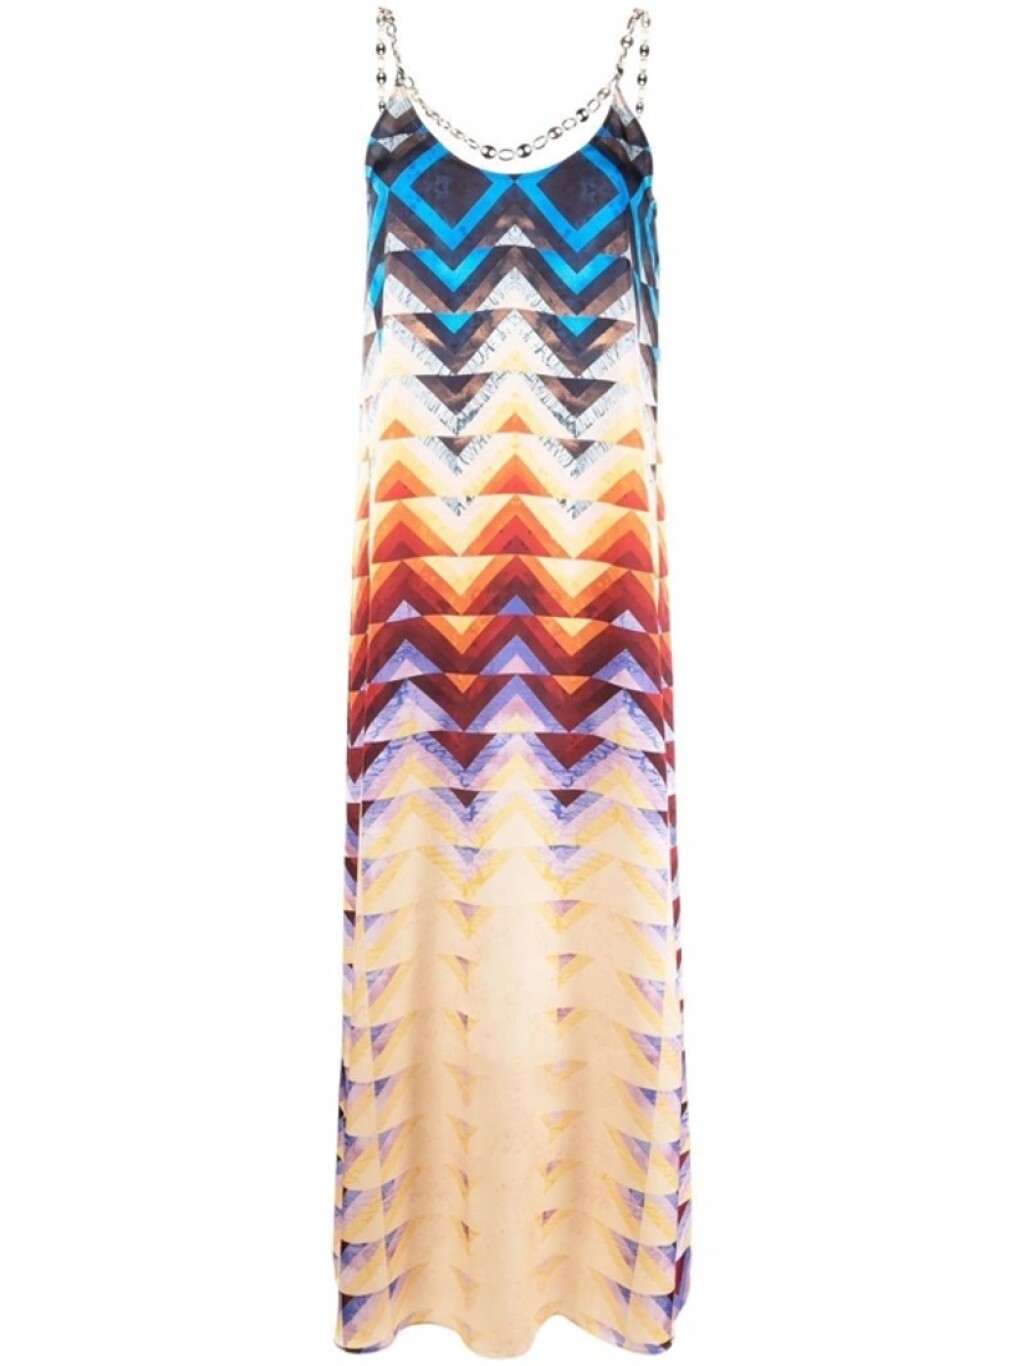 Paco Rabanne haljina s geometrijskim uzorkom, 540 eura